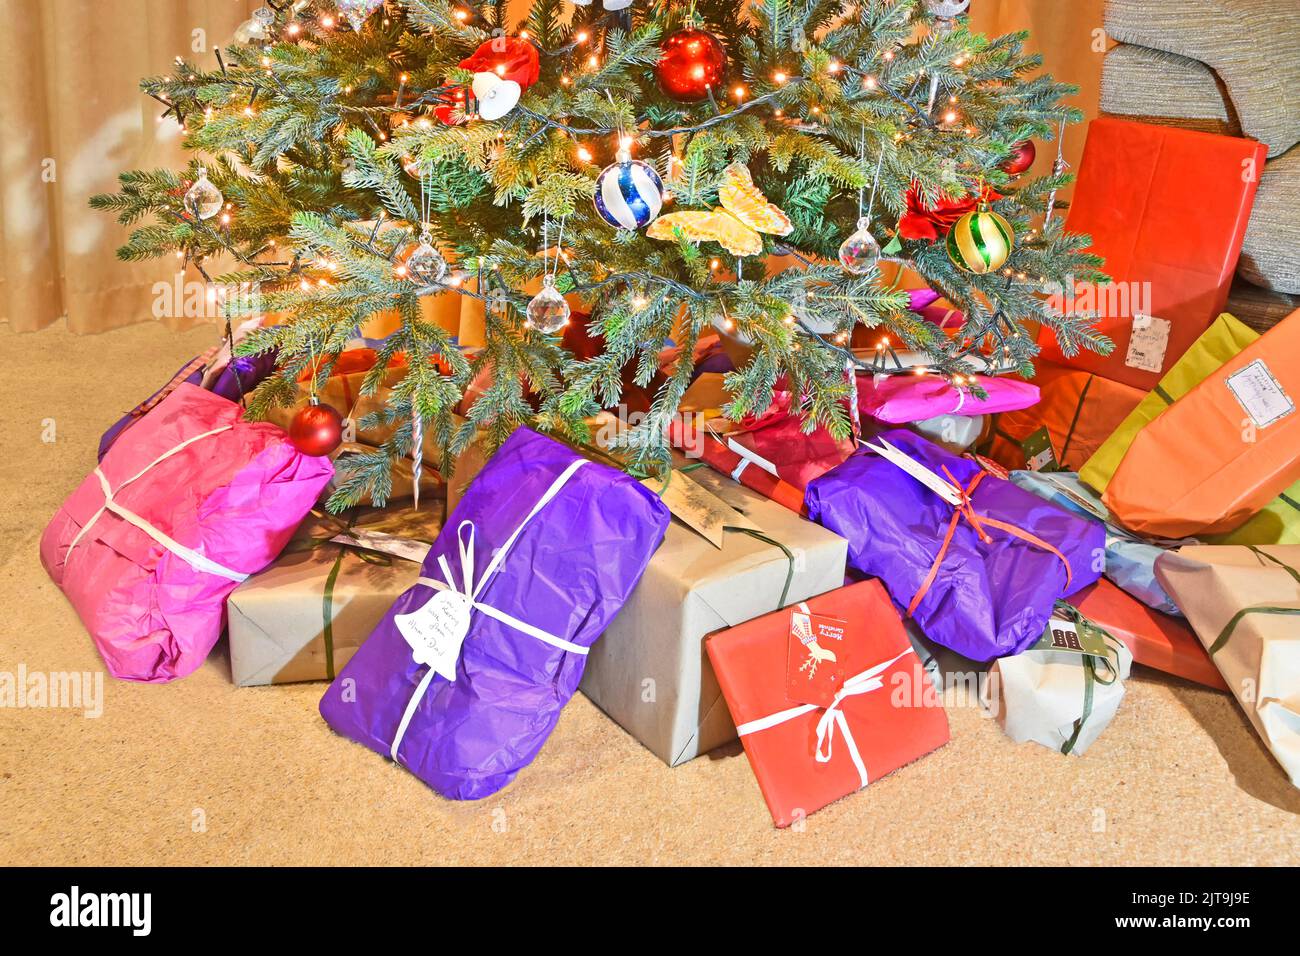 Papier d'emballage recyclable et écologique coloré pour cadeau et cadeau de Noël, placé à la base d'un arbre de Noël artificiel décoré avec des lumières LED UK Banque D'Images